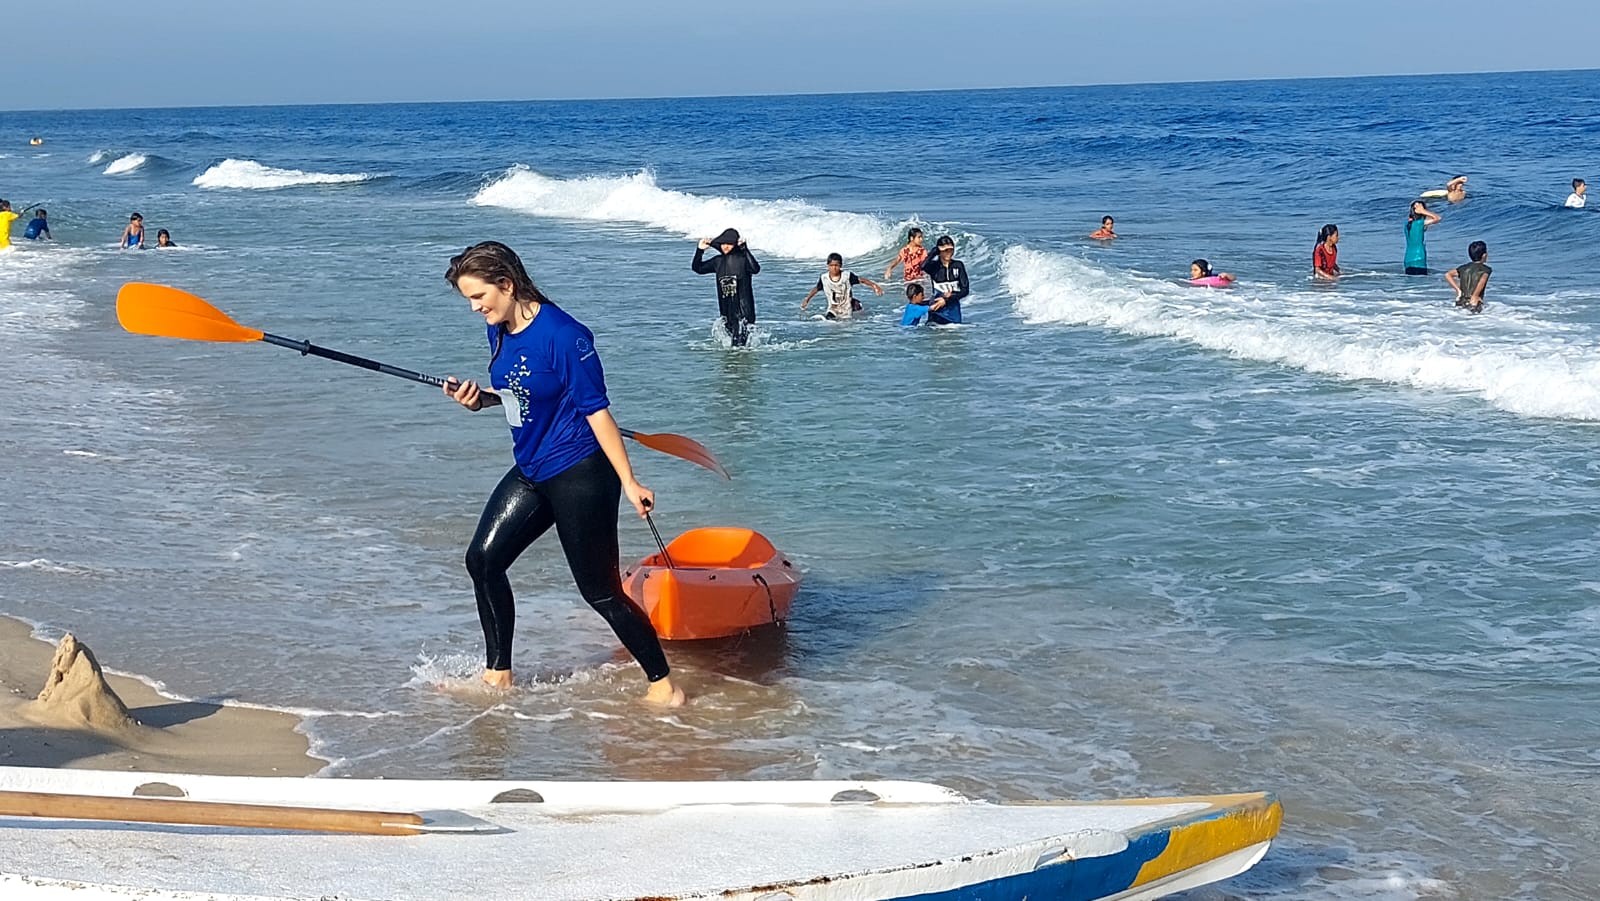 وفد من الاتحاد الأوروبي يمارس رياضة التجديف على شاطئ بحر غزة بدعوة من اتحاد الشراع والتجديف 5.jpg